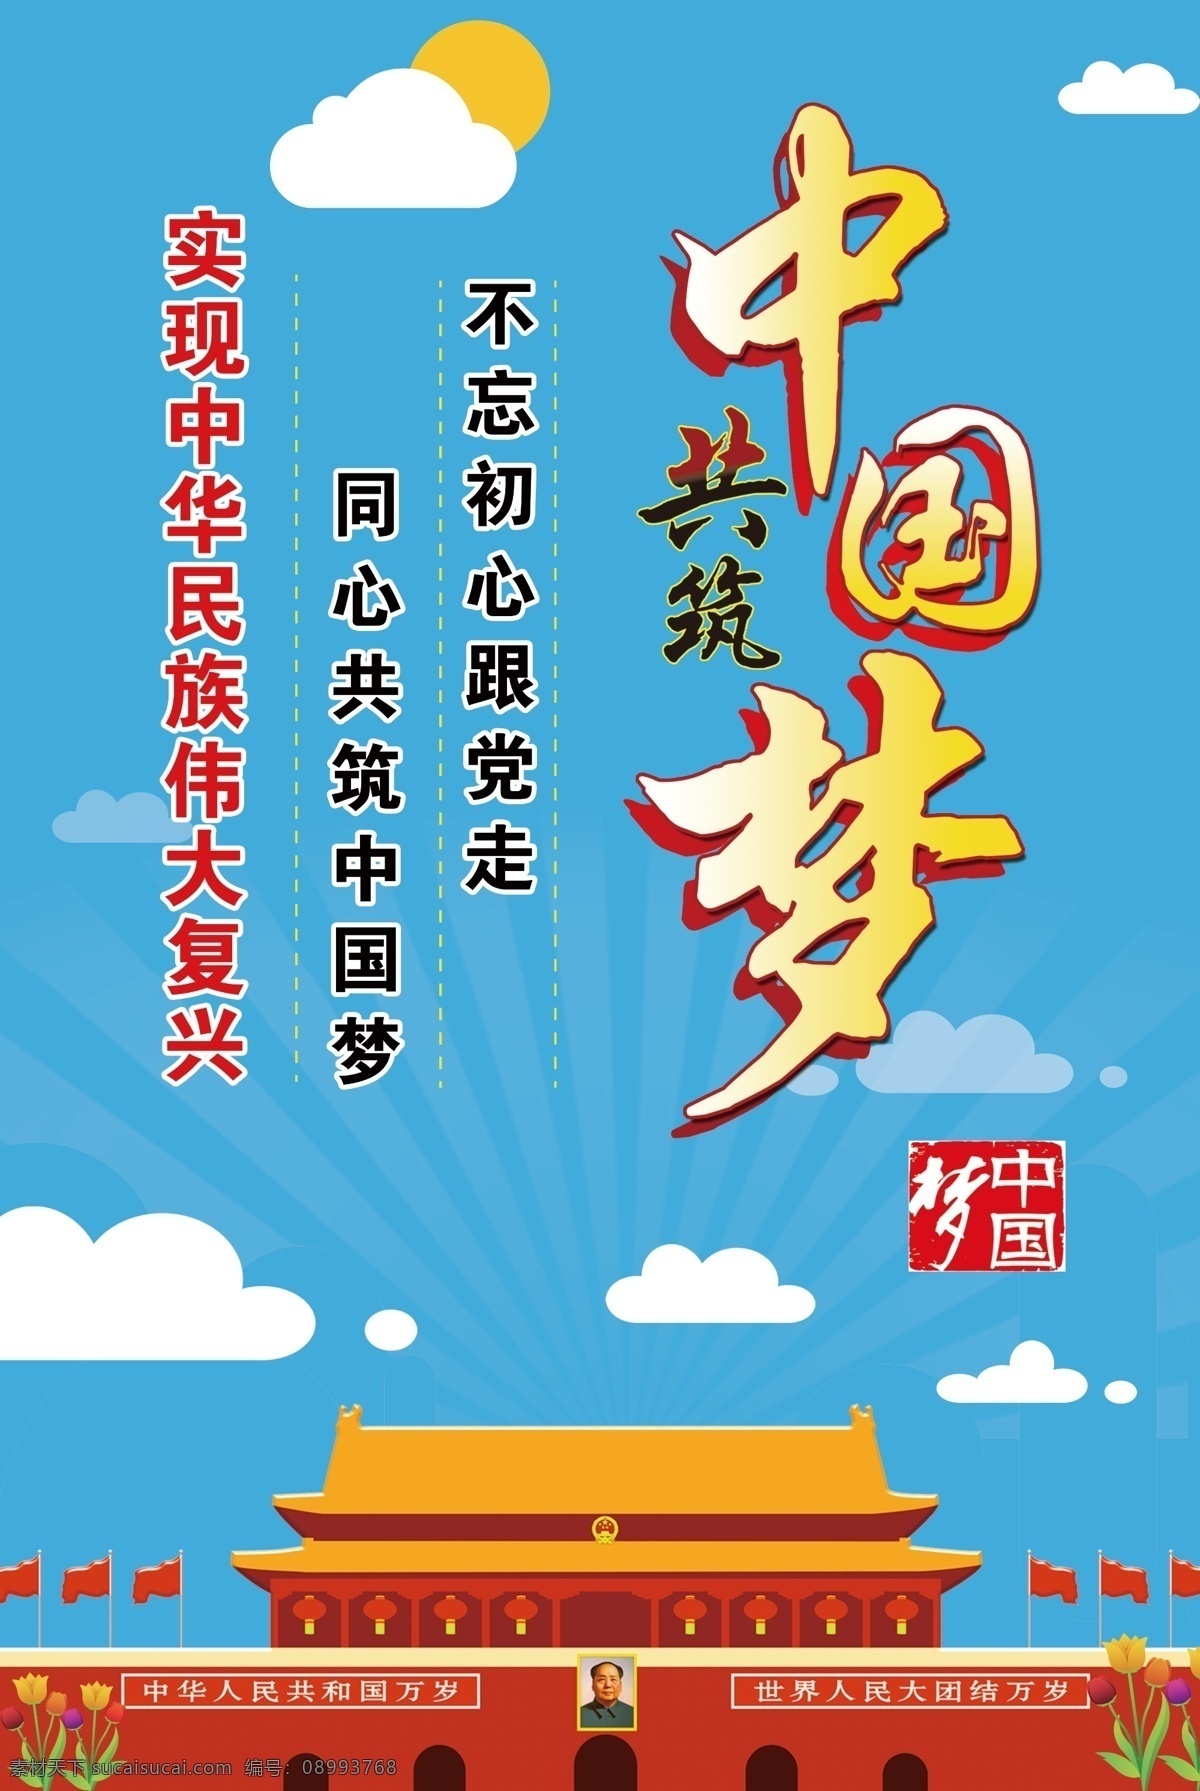 中国梦展板 我的中国梦 中国梦海报 中国梦文化 绚丽中国梦 中国梦标语 中国梦口号 中国梦宣传栏